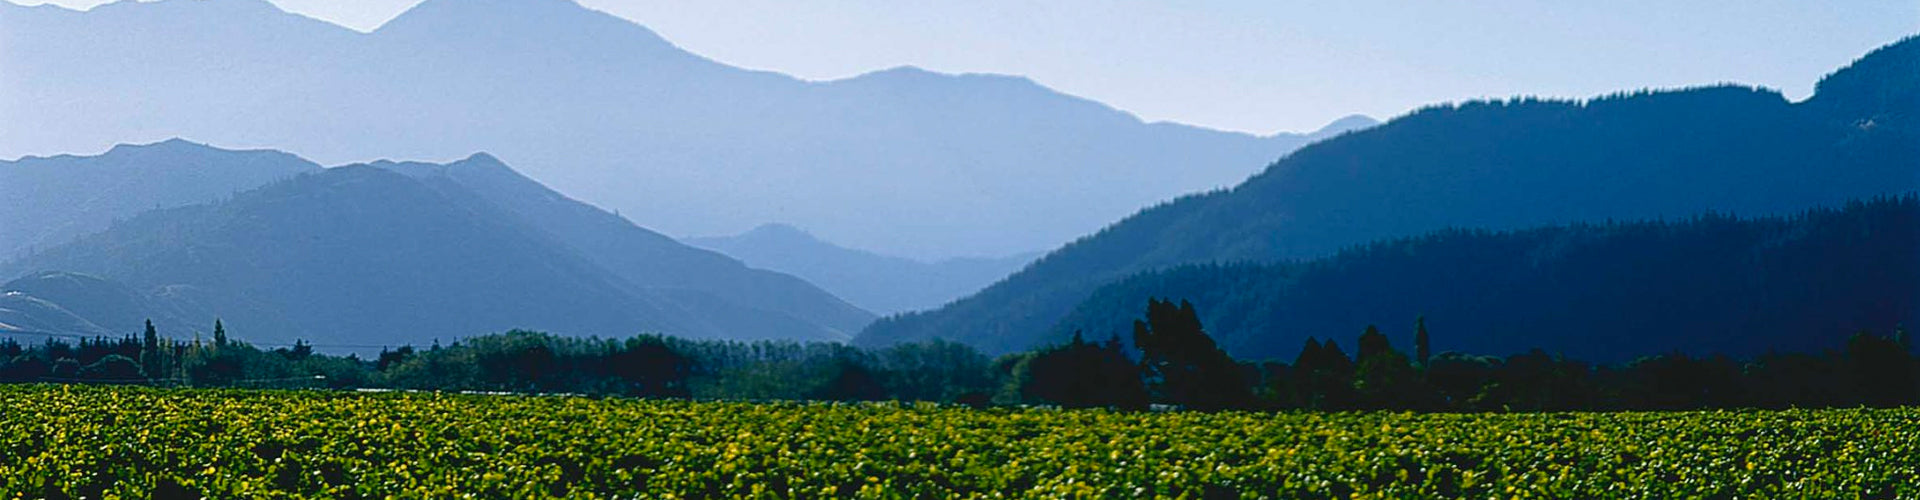 Staete Landt Vineyard in Marlborough, New Zealand